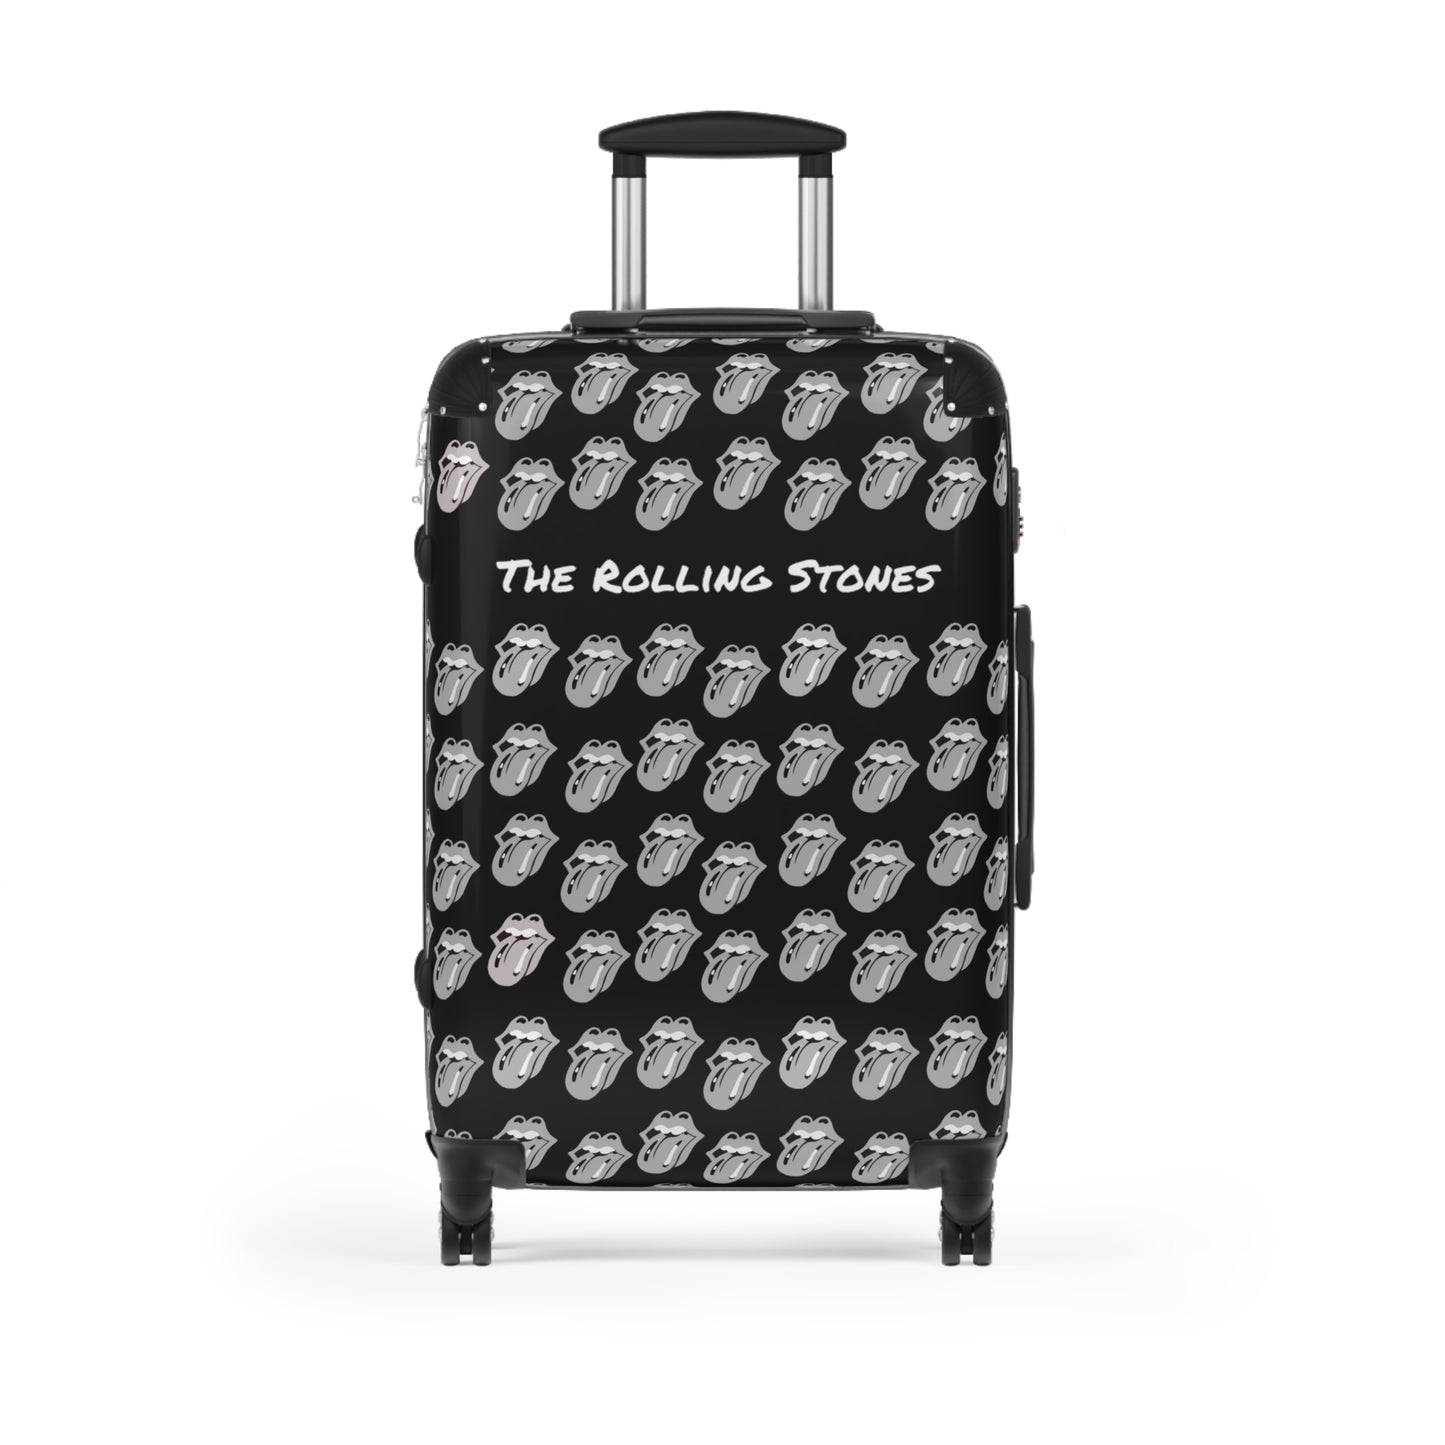 Rolling Stones Suitcase, Paint it Black 3 Sizes